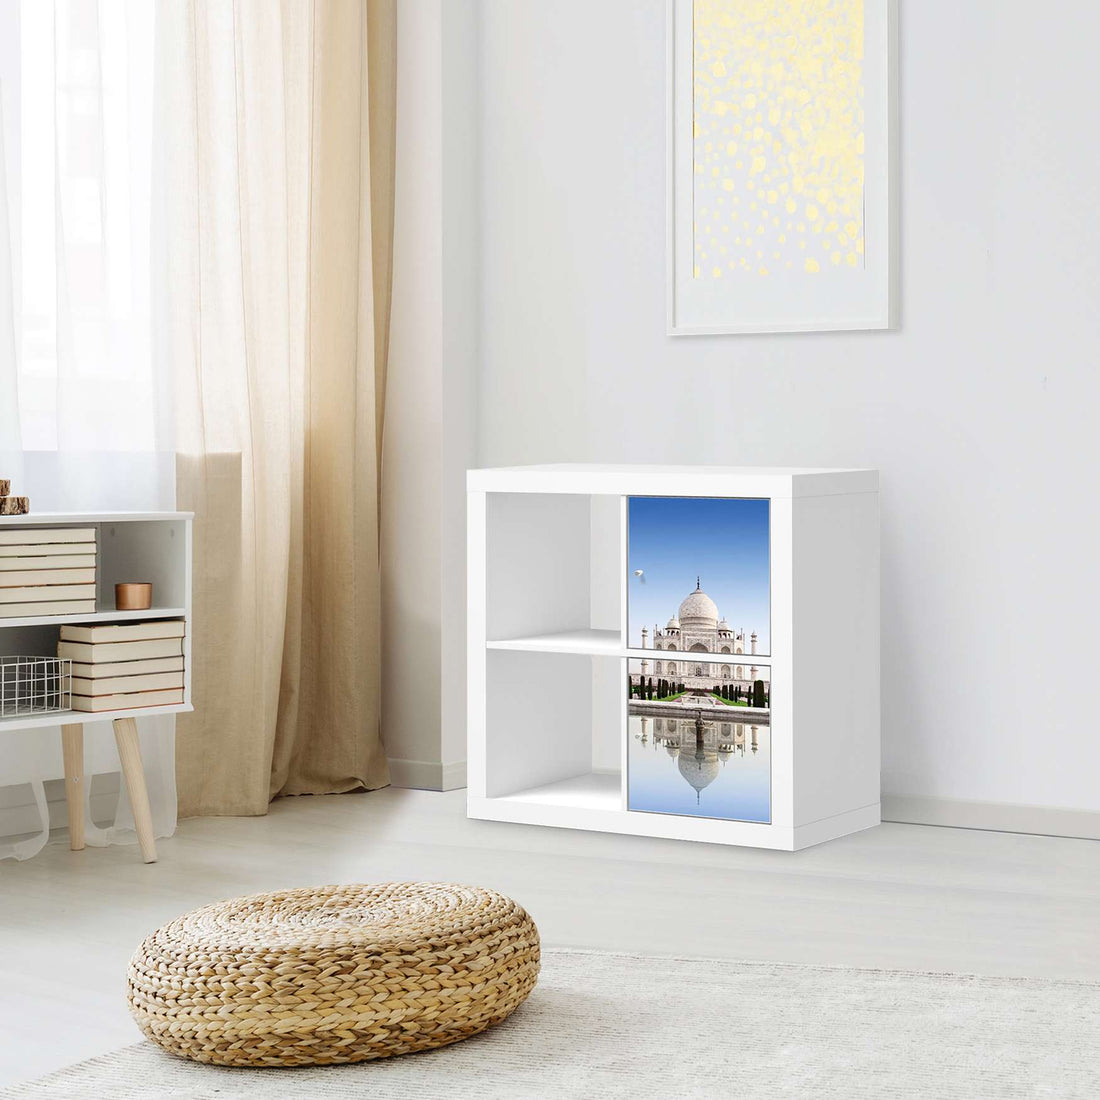 Klebefolie für Möbel Taj Mahal - IKEA Expedit Regal 2 Türen Hoch - Wohnzimmer